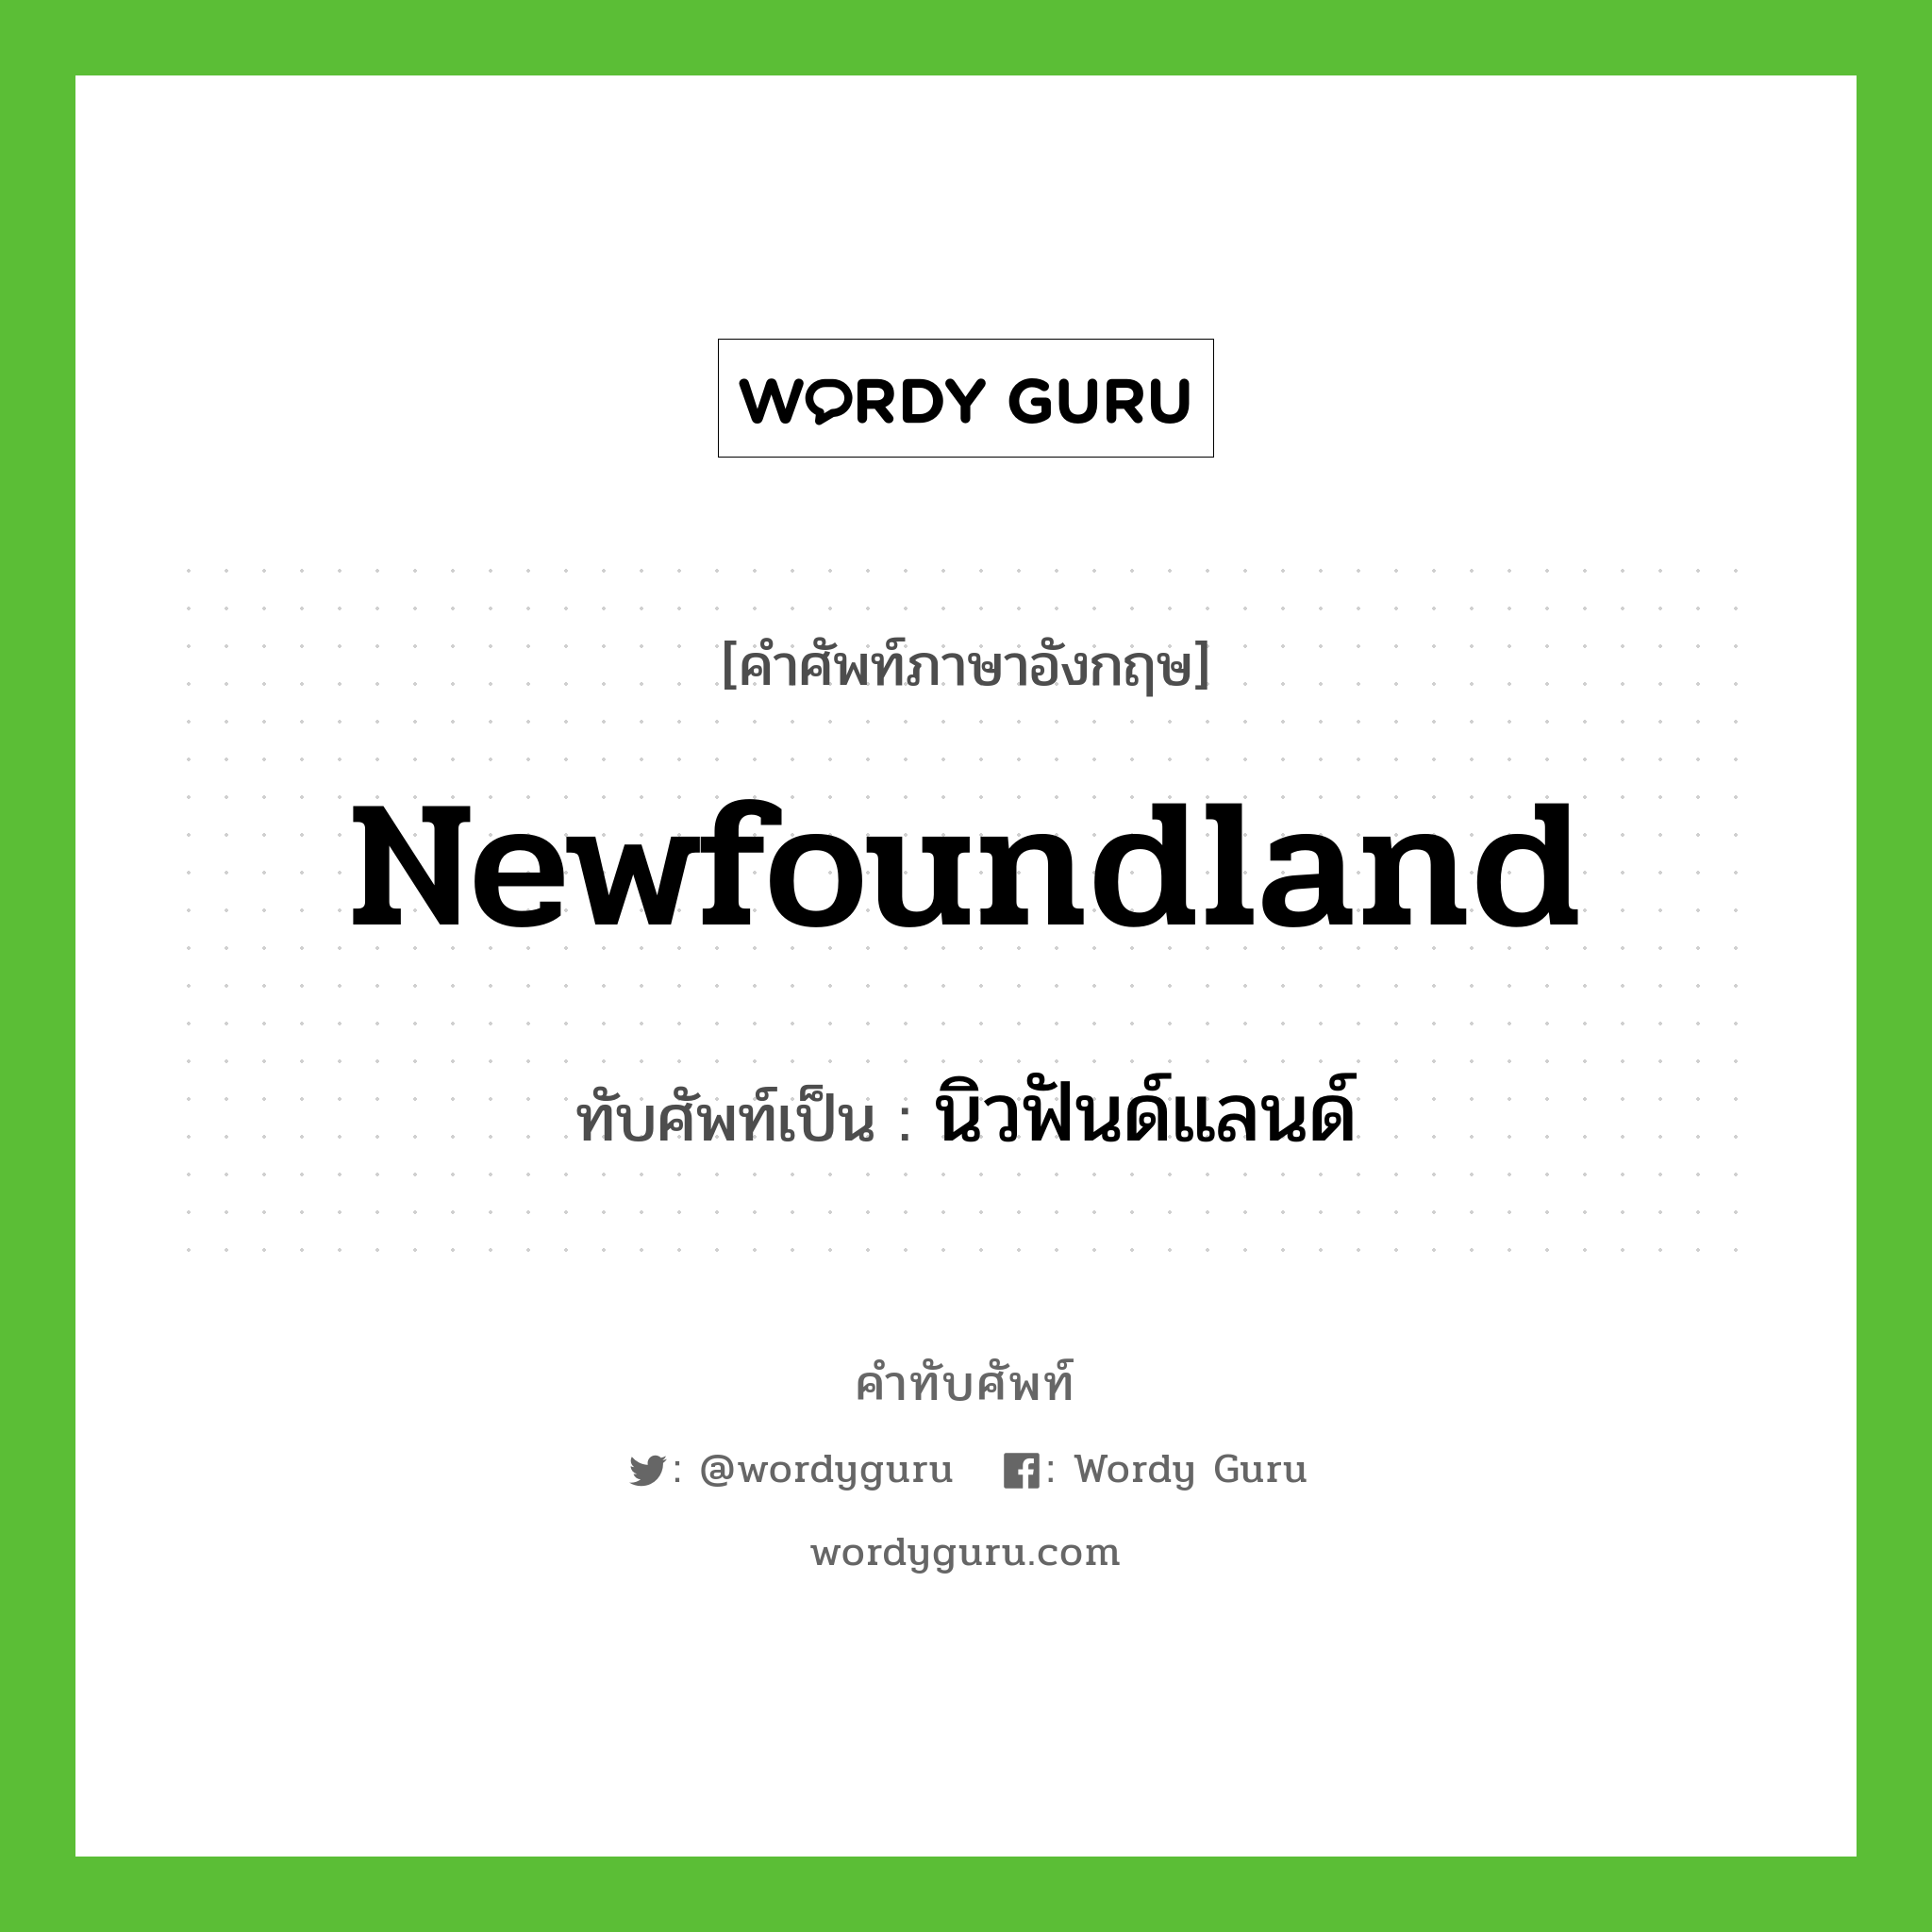 Newfoundland เขียนเป็นคำไทยว่าอะไร?, คำศัพท์ภาษาอังกฤษ Newfoundland ทับศัพท์เป็น นิวฟันด์แลนด์